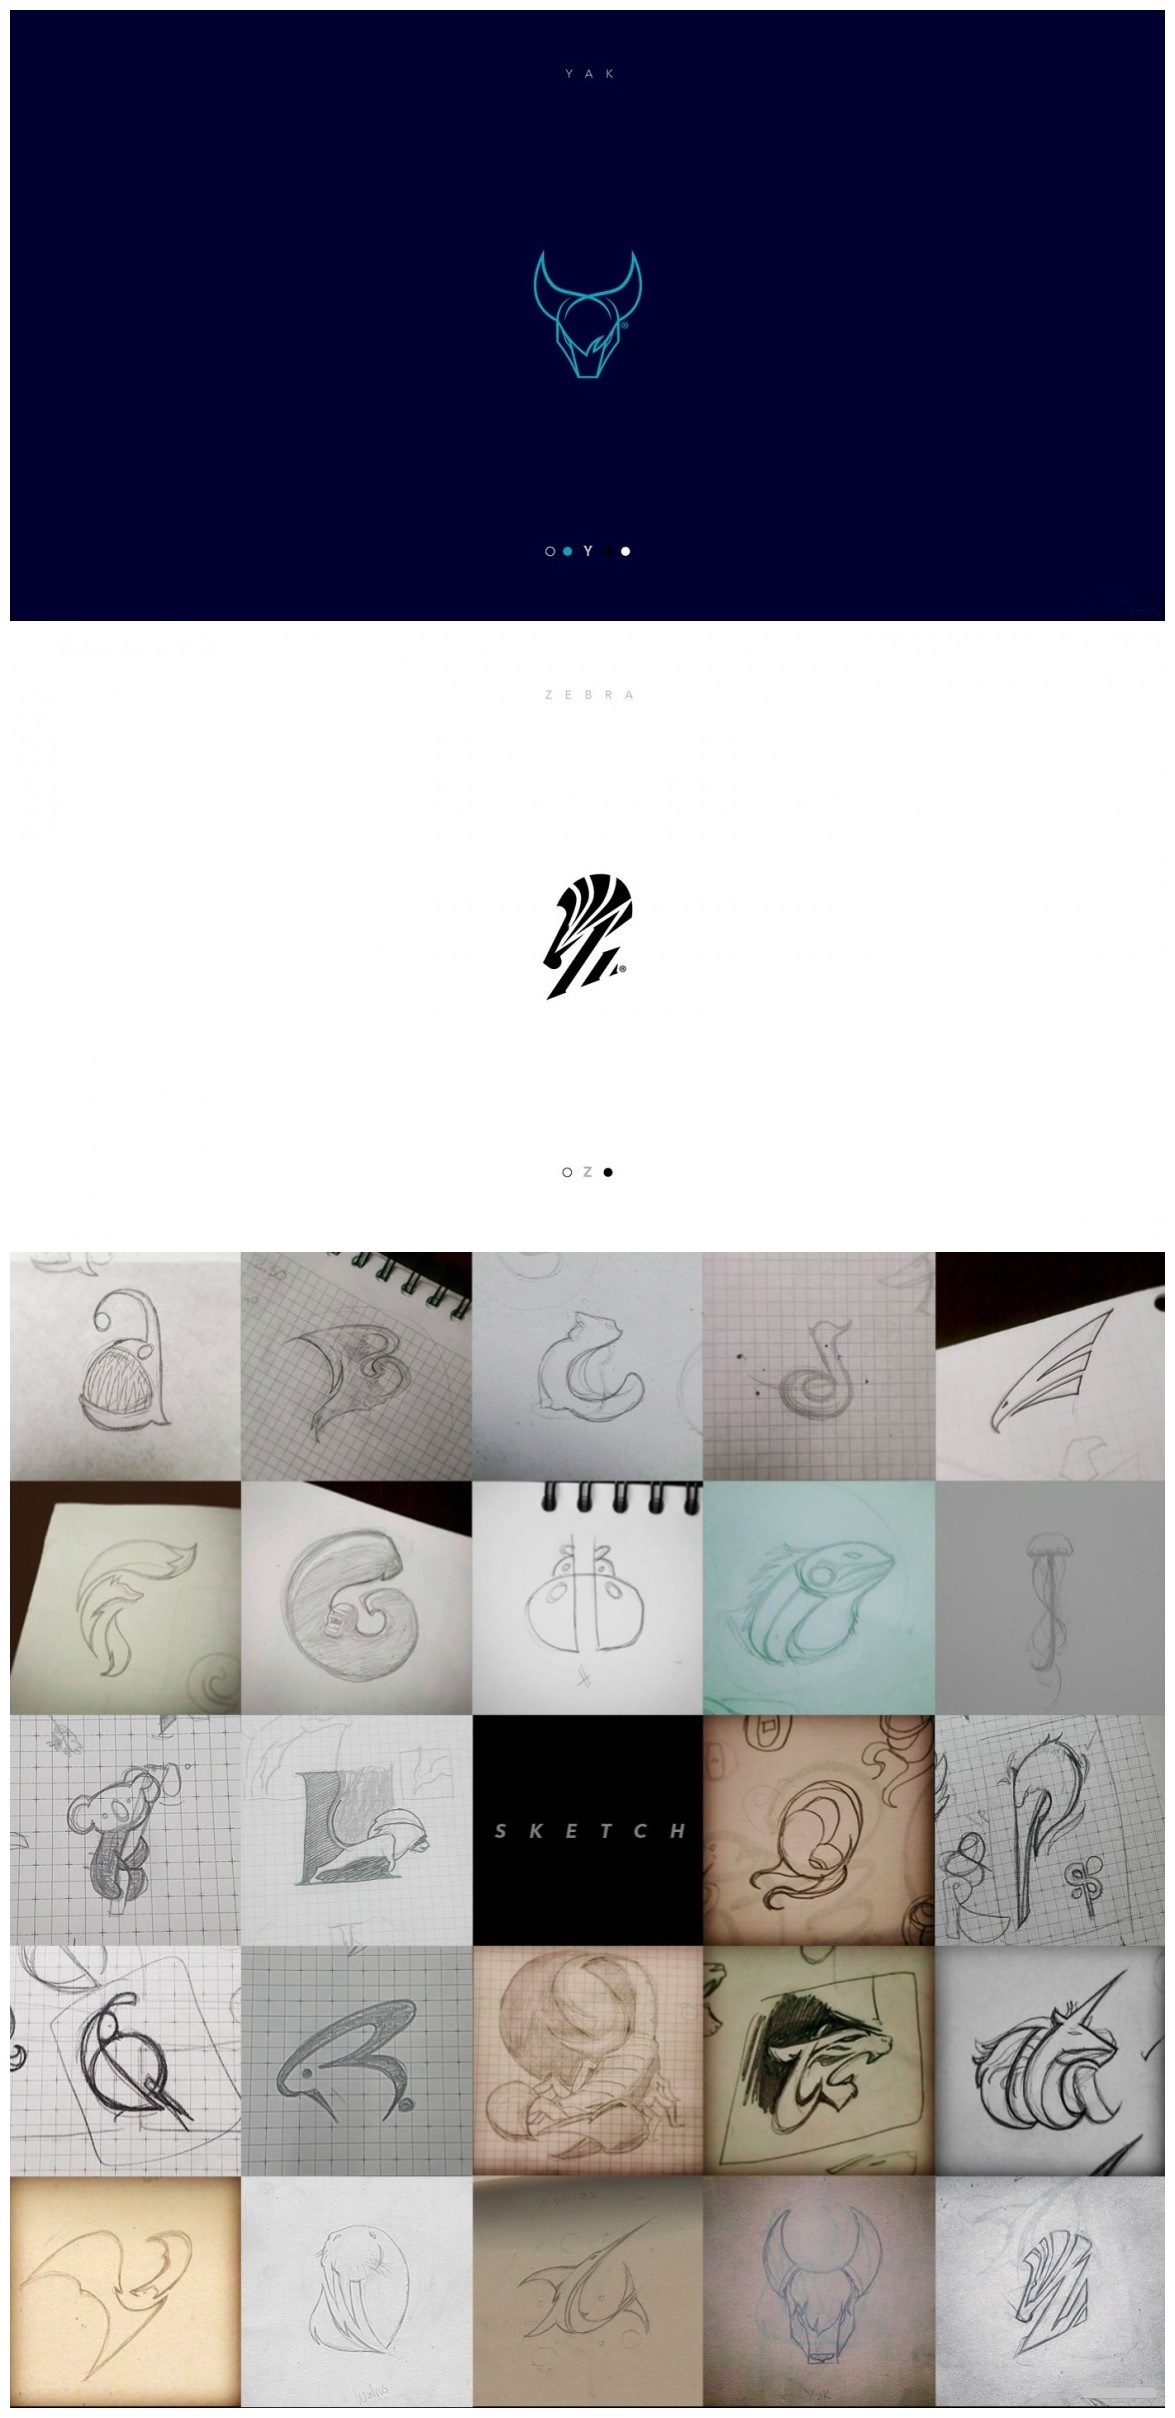 26个牛光闪闪字母变形动物logo设计,by:lucho gonzalez #标志分享